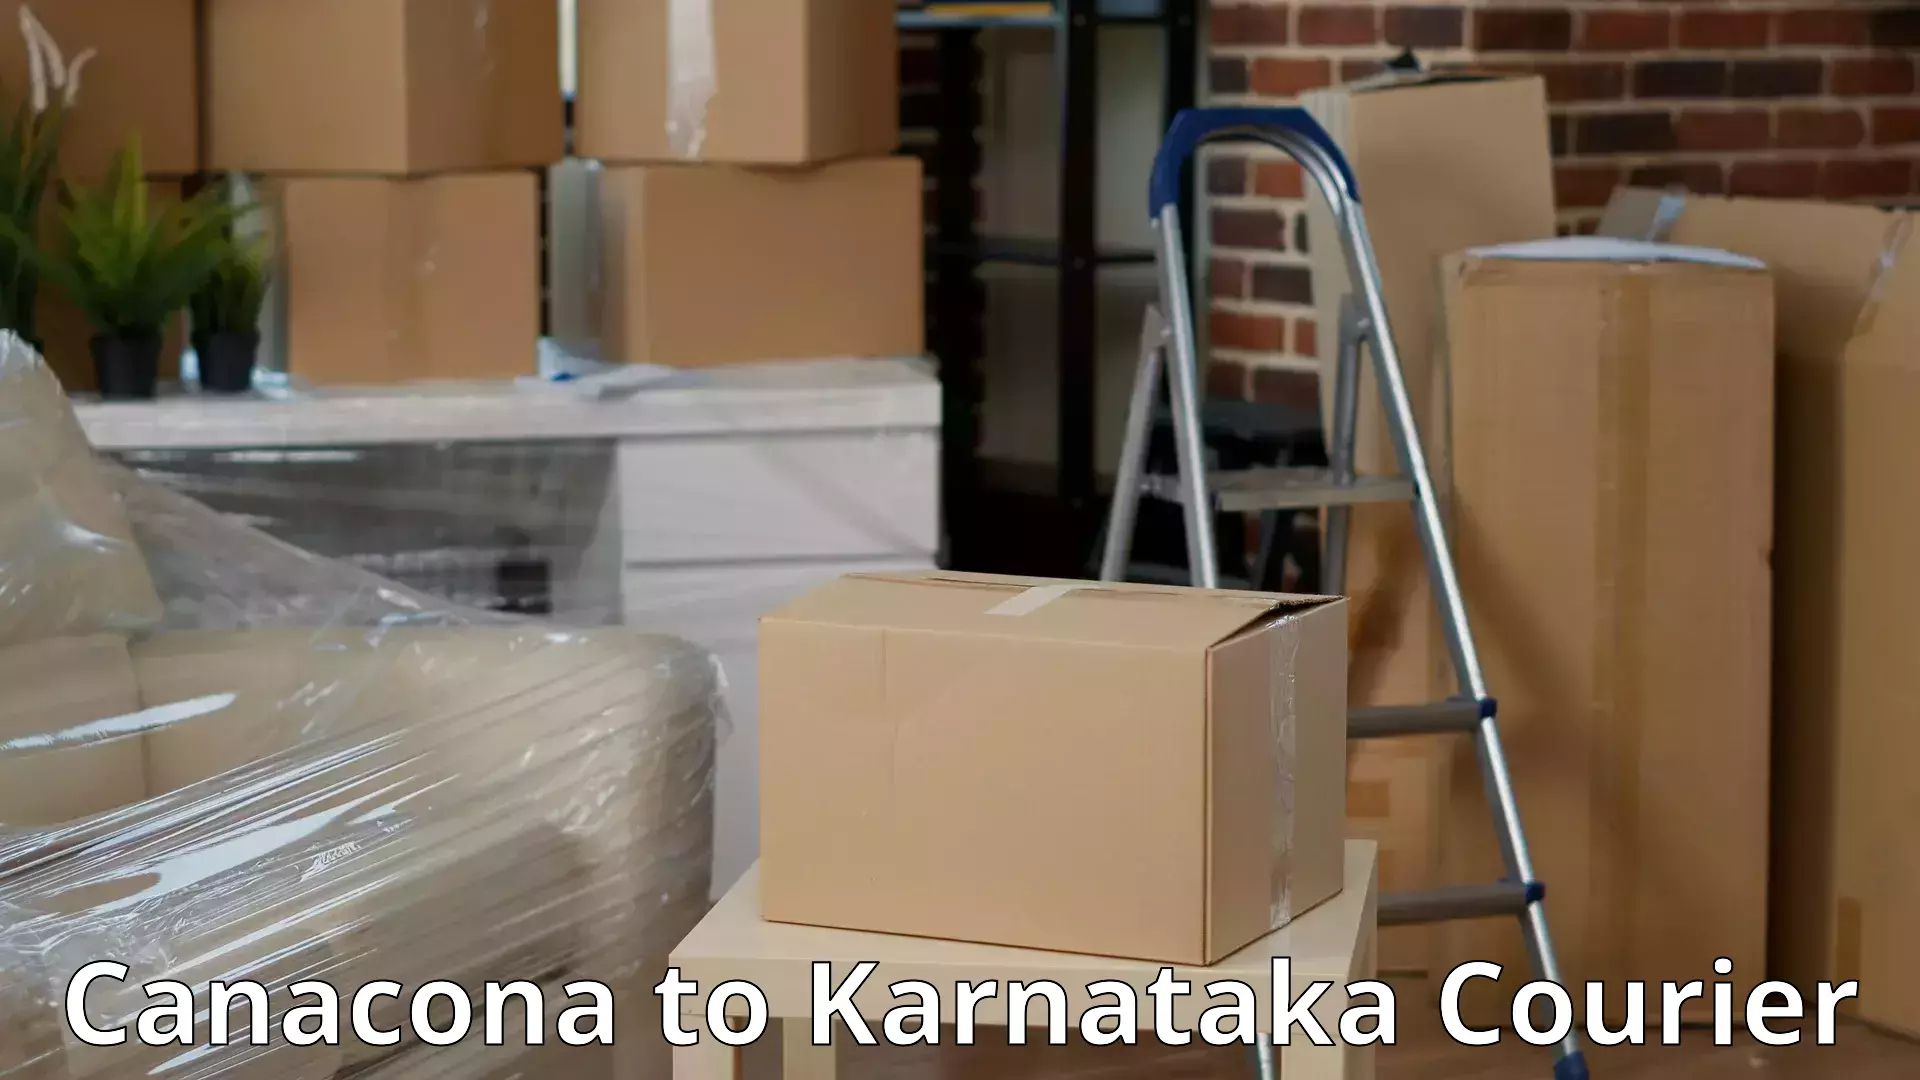 Professional moving assistance Canacona to Yenepoya Mangalore